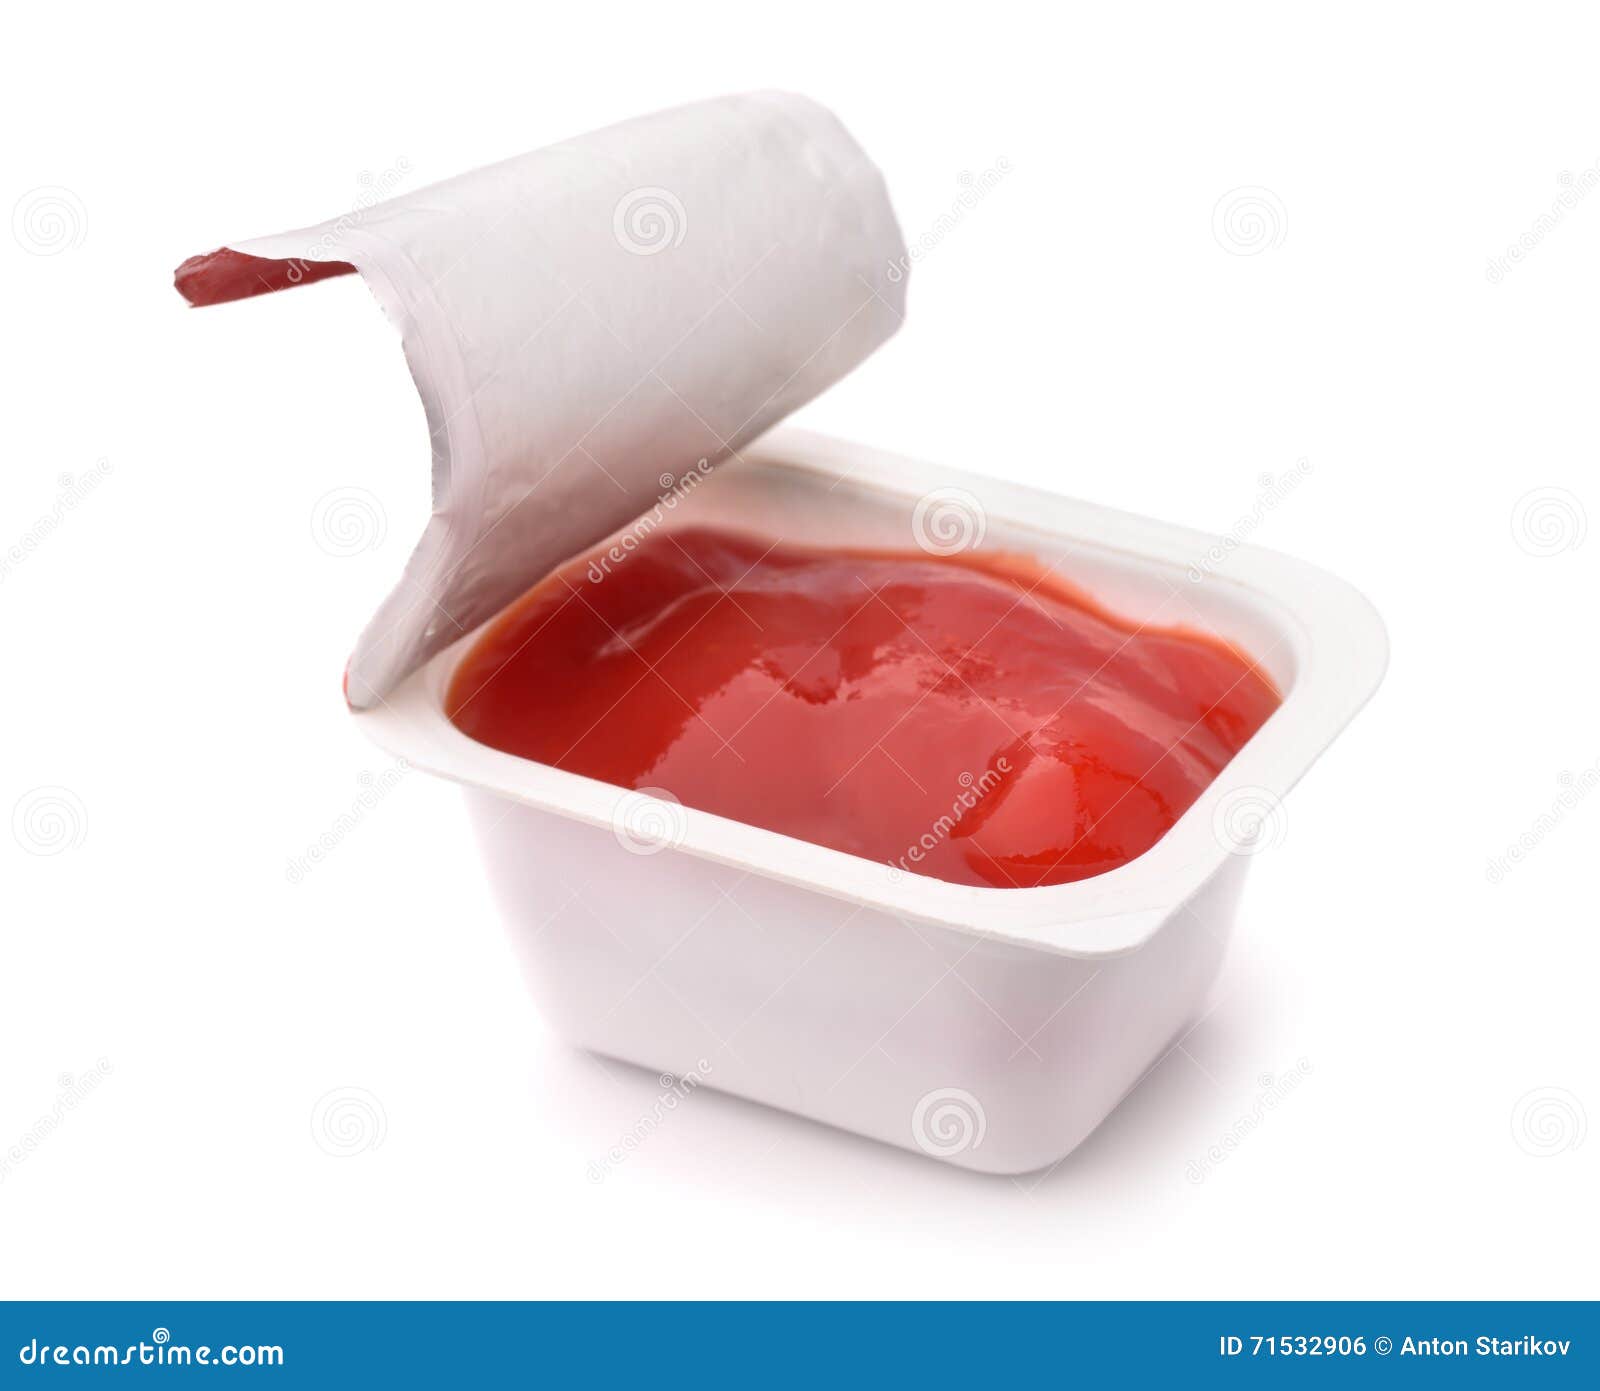 ketchup dip packet